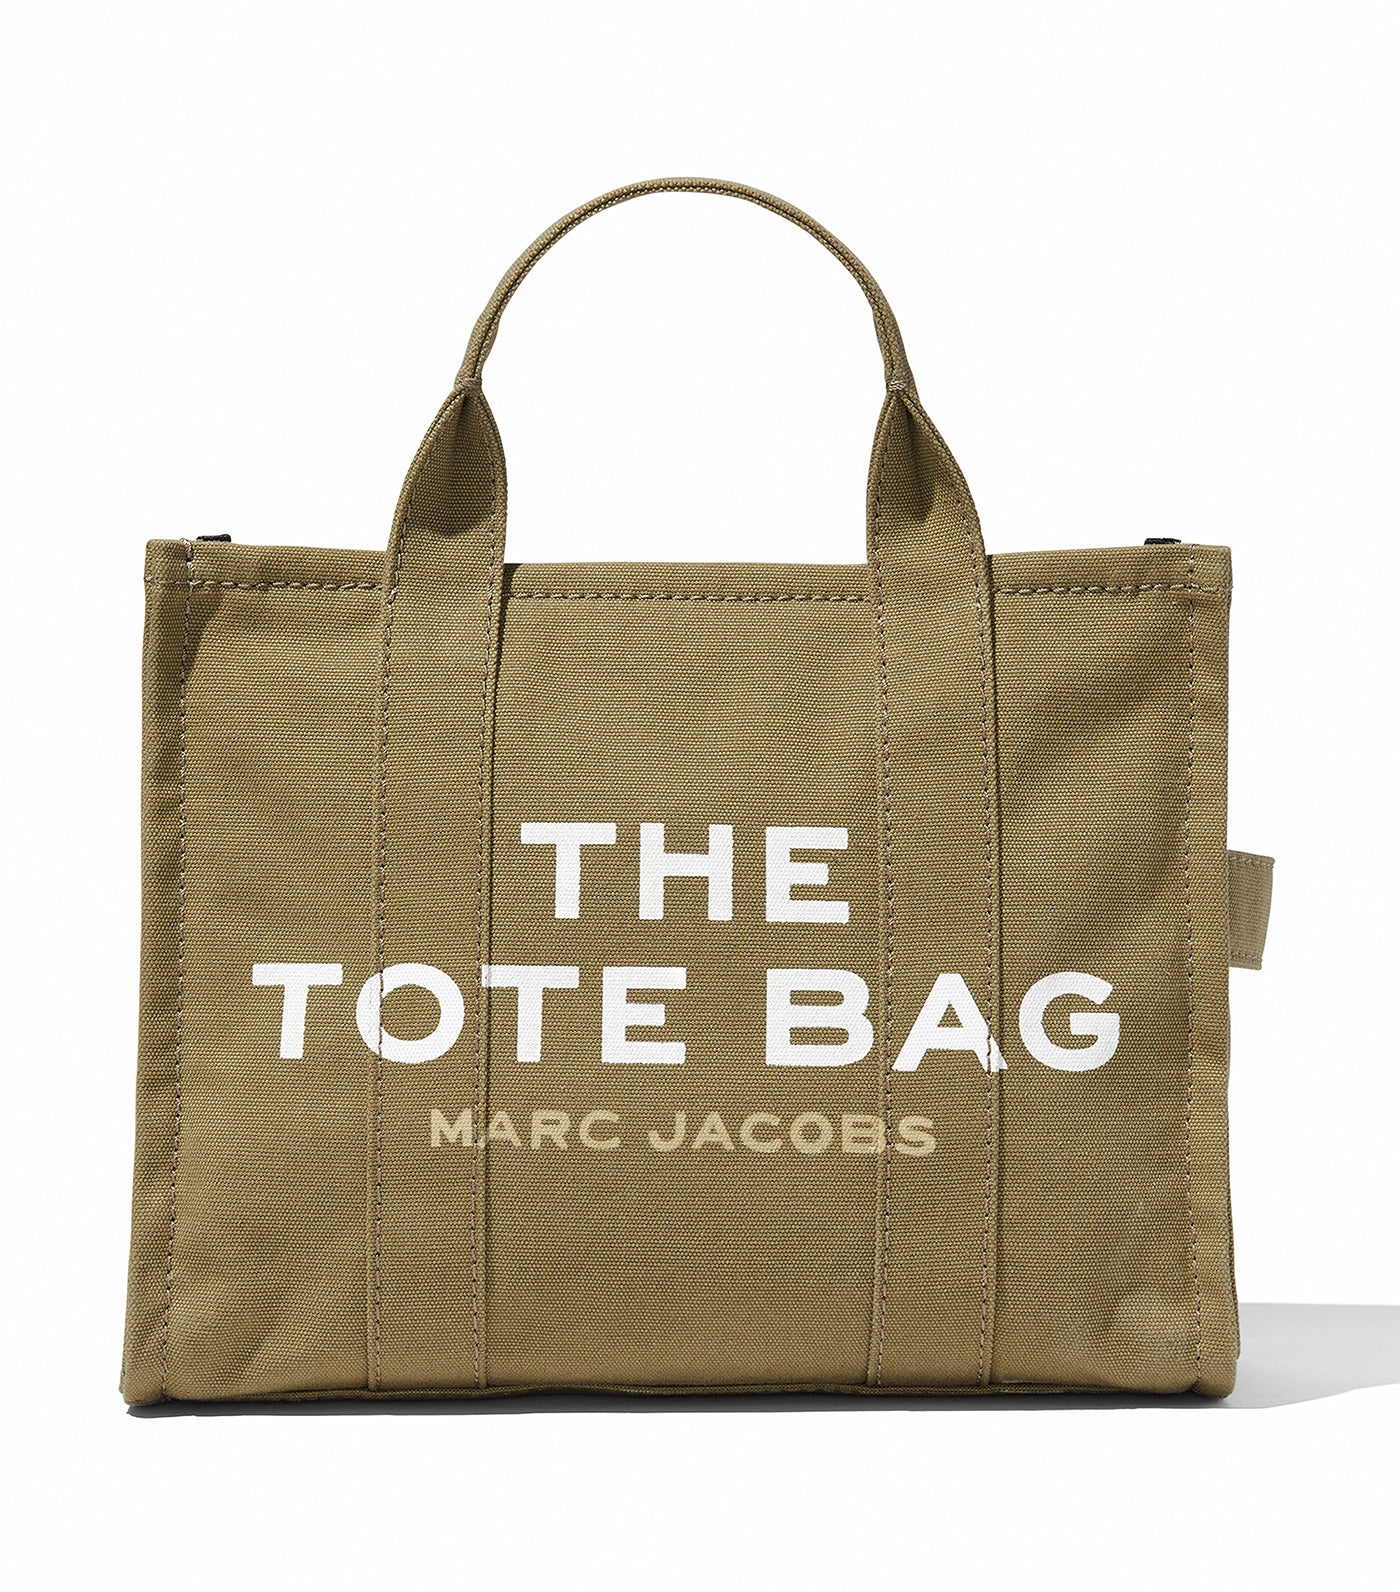 The Medium Tote Bag Slate Green